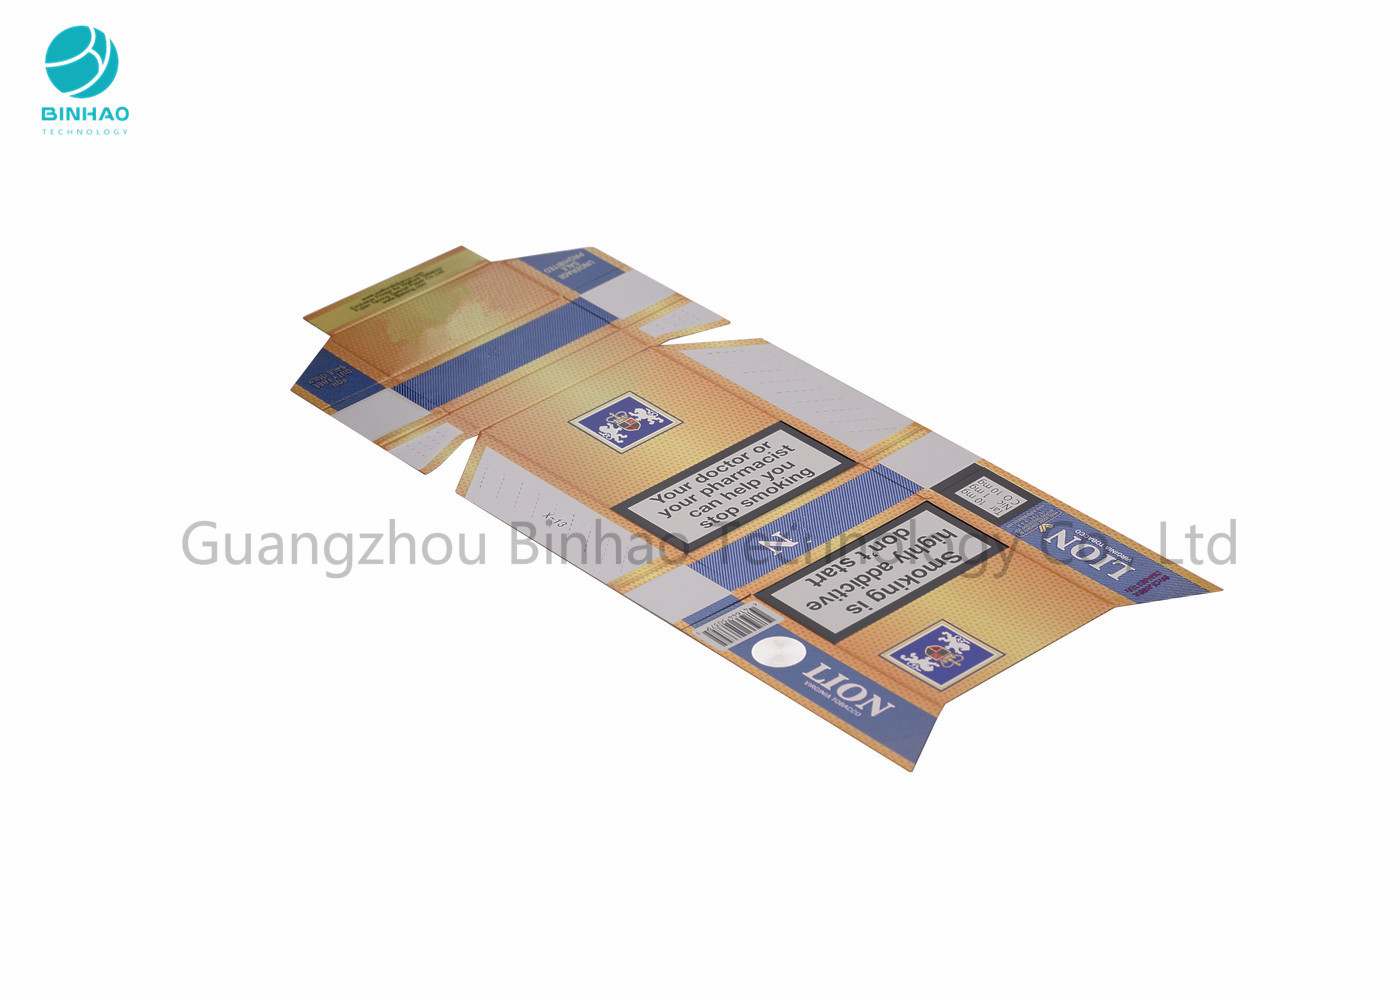 กล่องกระดาษแข็งกรณีบุหรี่ / การพิมพ์สีเต็มรูปแบบ CIG Packet ด้วยการปั๊มร้อน